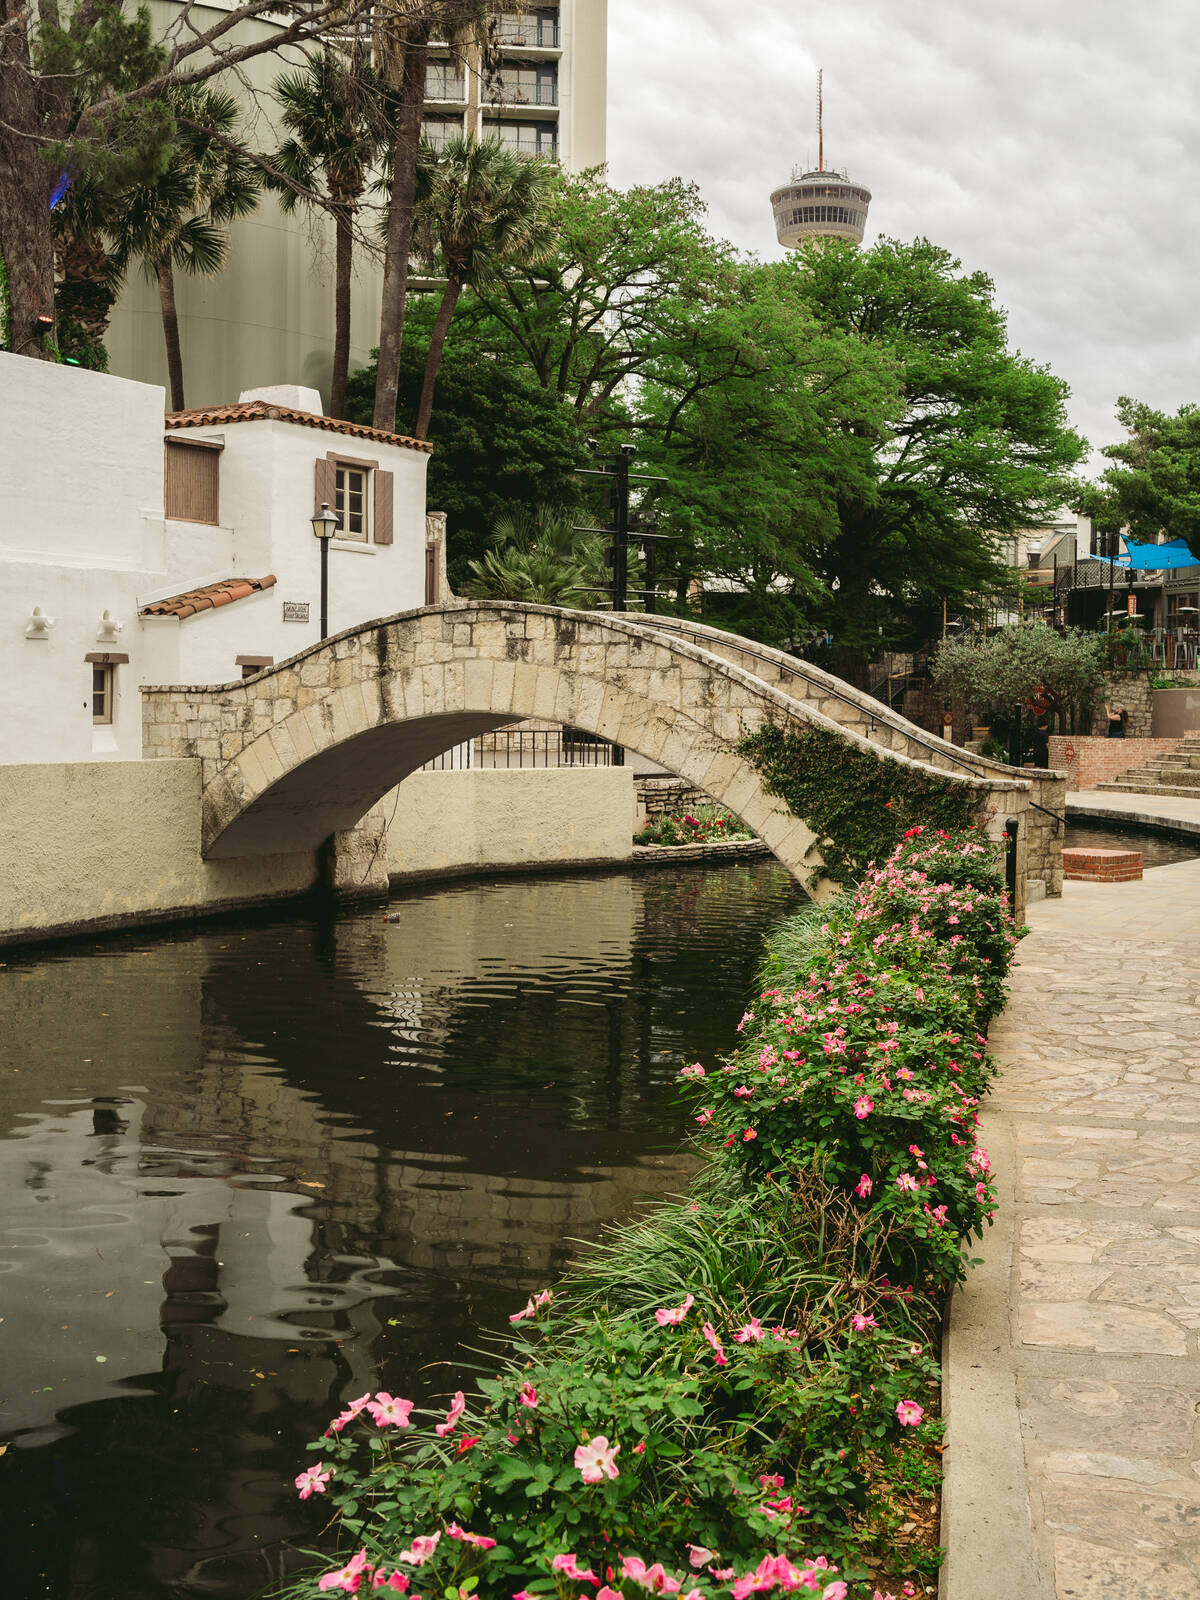 Image of San Antonio Riverwalk by James Billings.